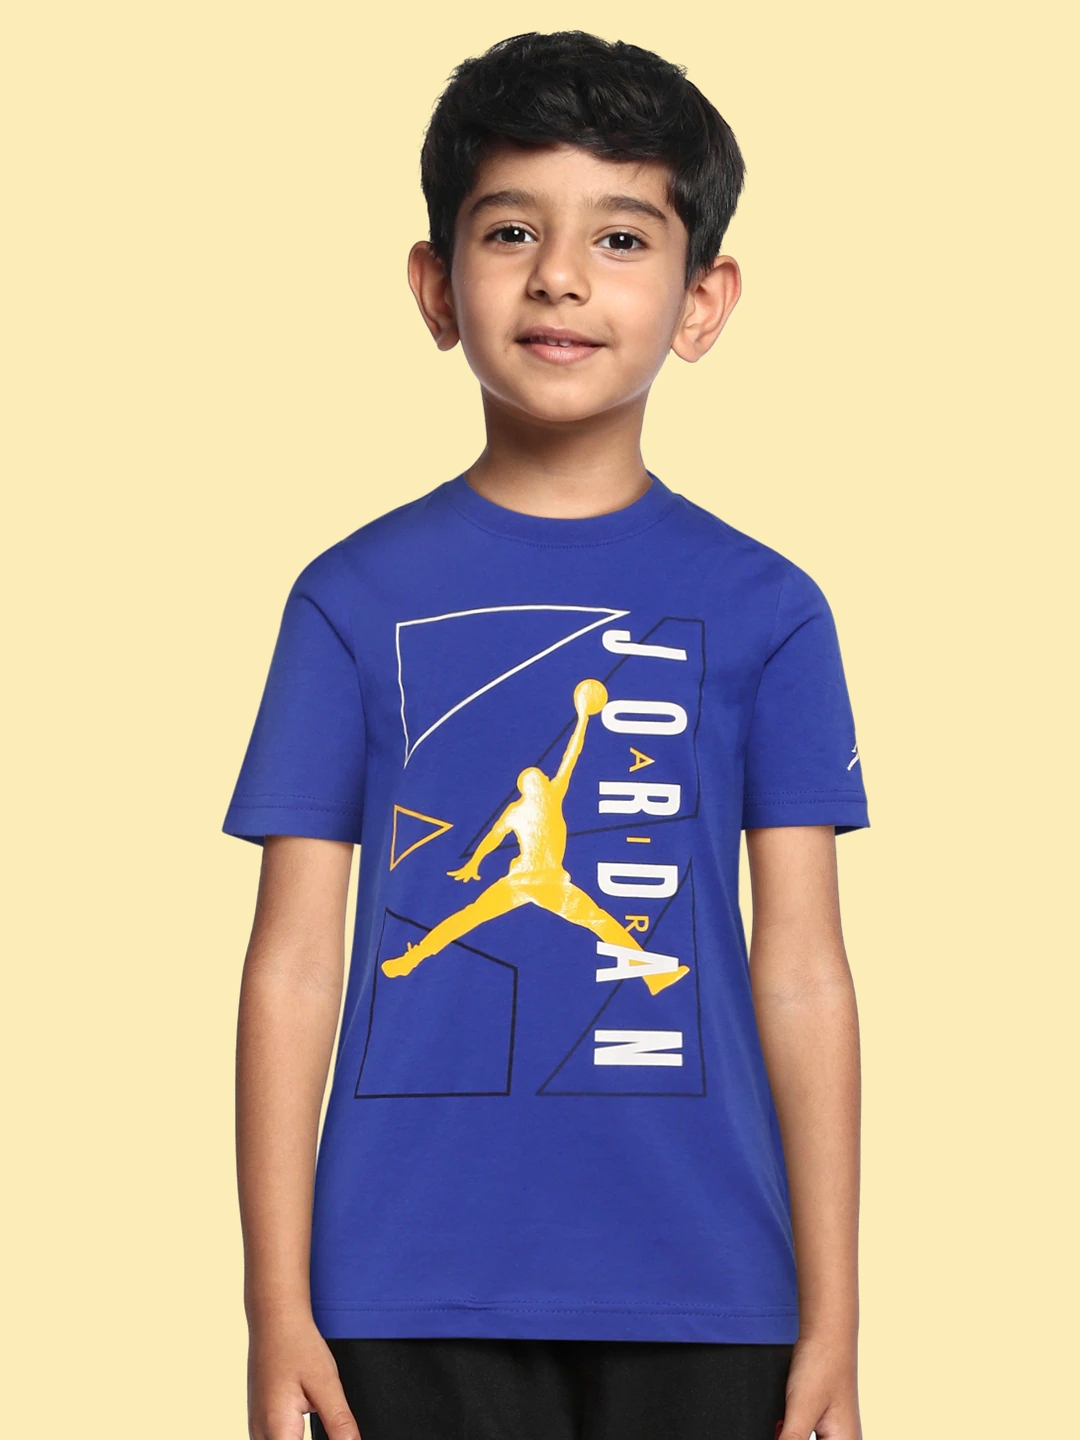 Buy Jordan Boys Blue & White Brand Logo Printed T Shirt - Tshirts for ...